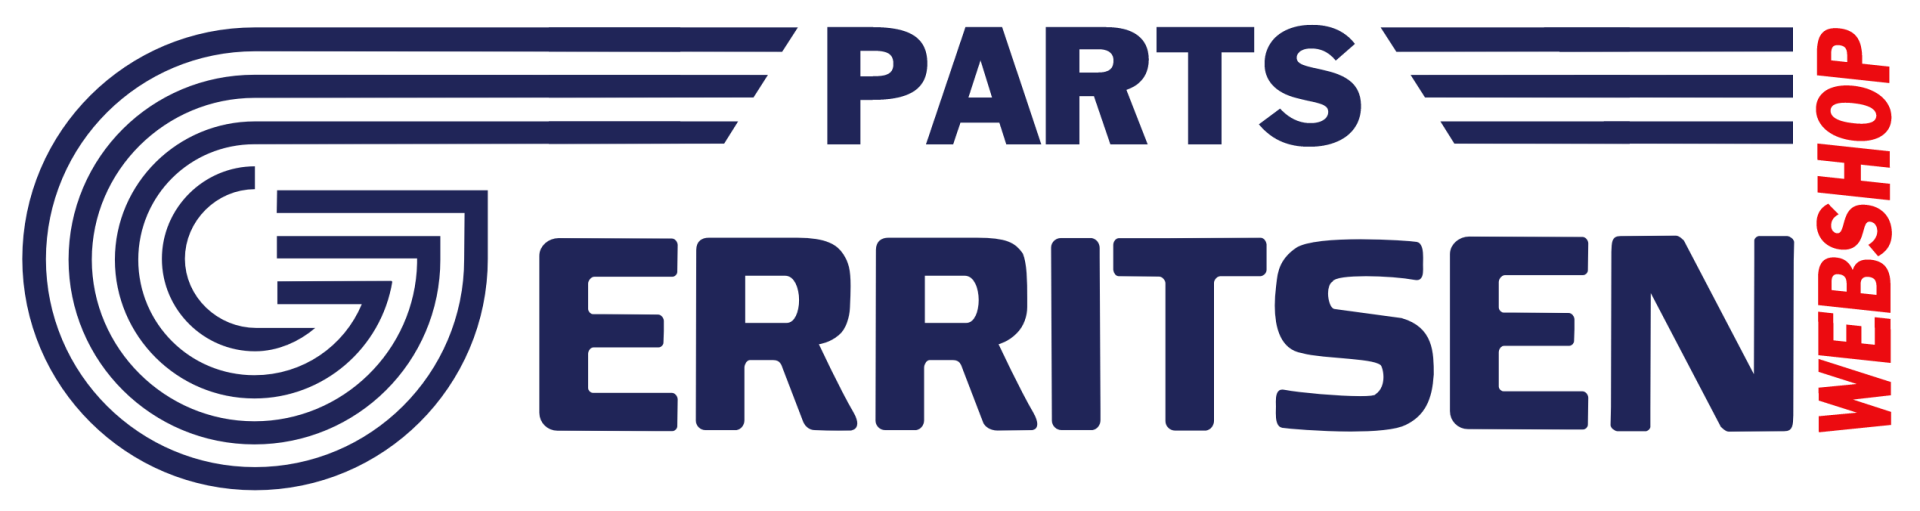 Welkom bij Gerritsen Parts - Onderdeel van GLT INTERLIFT B.V.